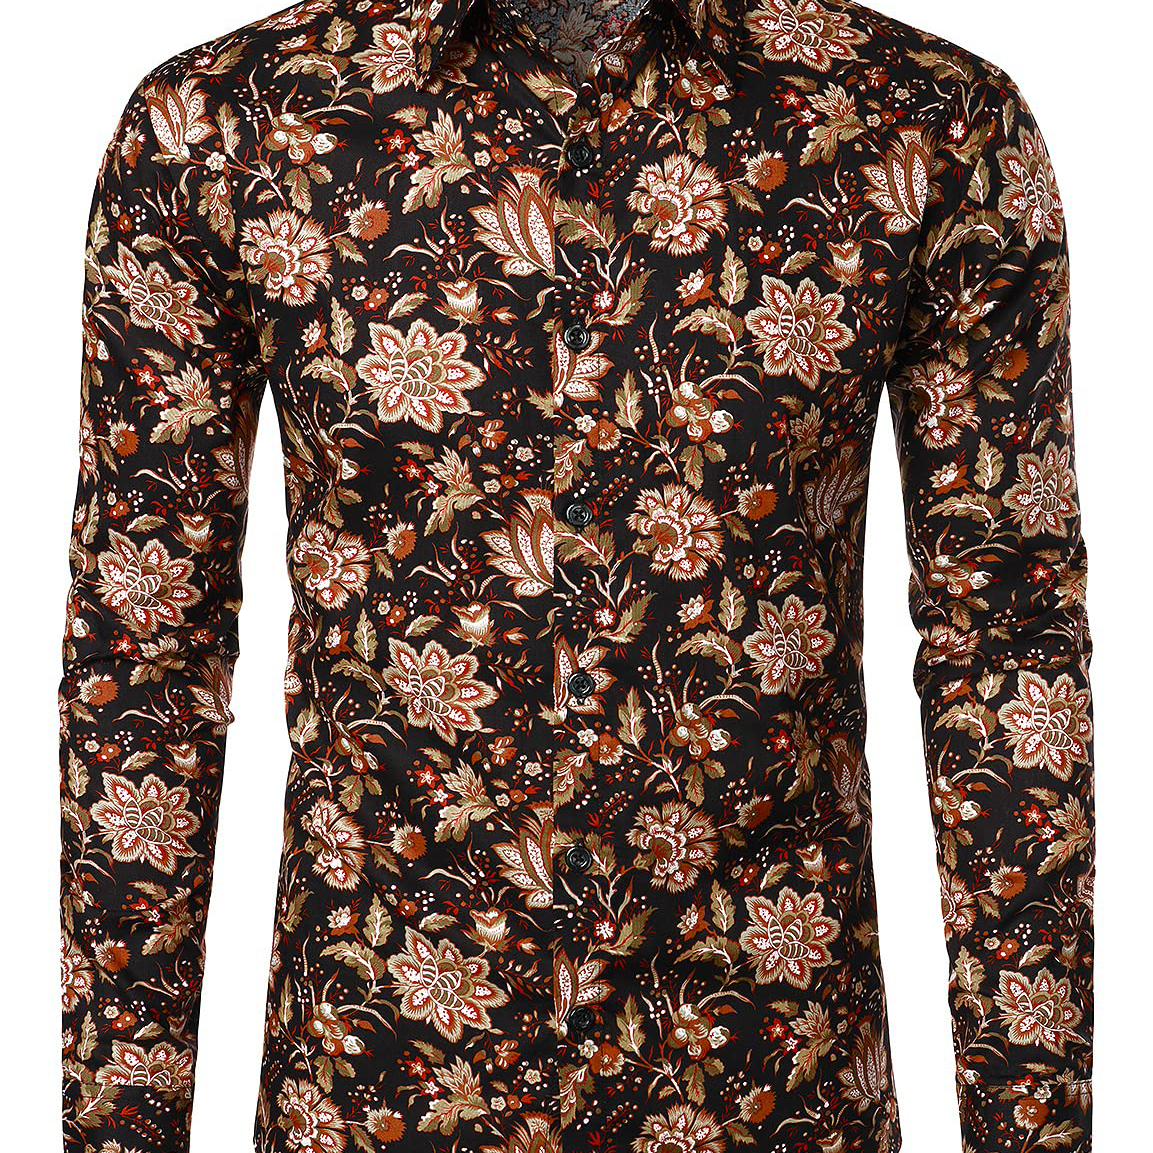 Camisa de vestir de manga larga con botones de flores retro transpirable de algodón floral vintage para hombre